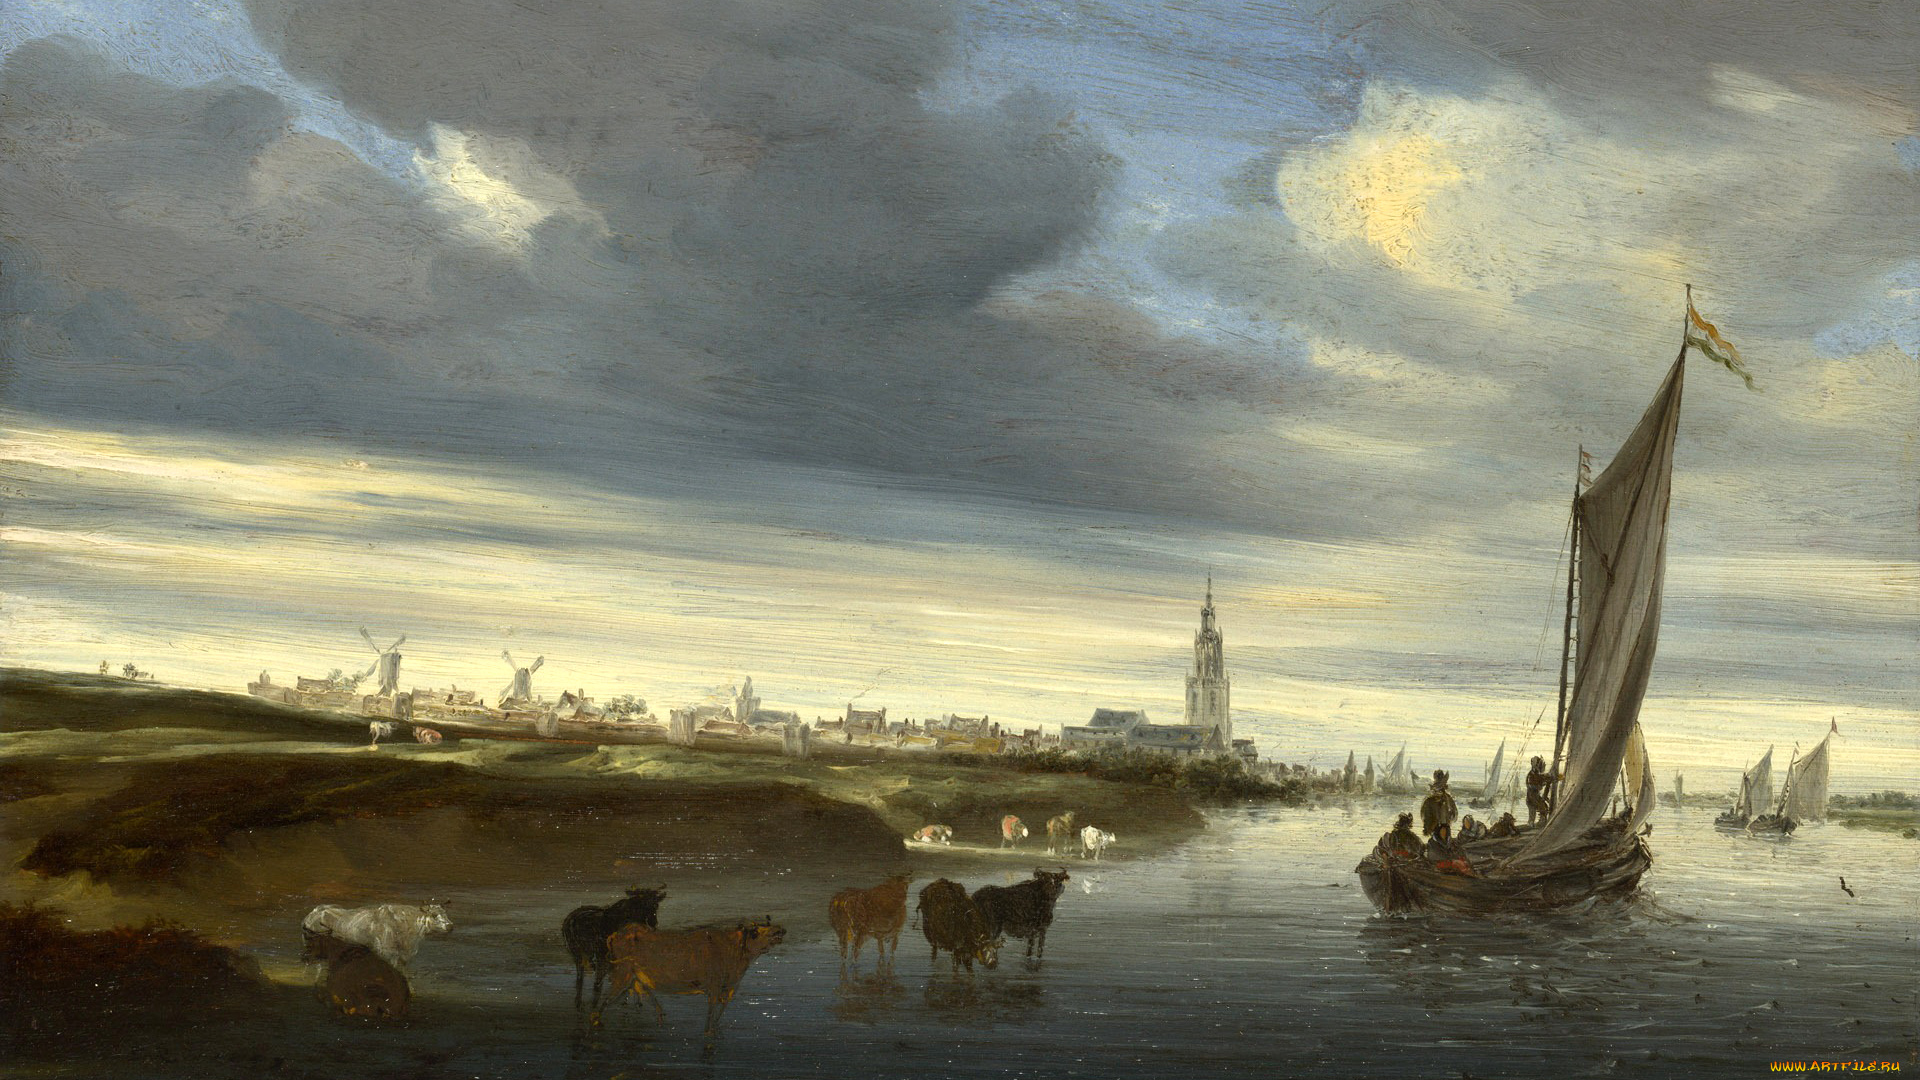 рисованное, живопись, пейзаж, канал, облака, небо, башня, мельница, парус, коровы, лодка